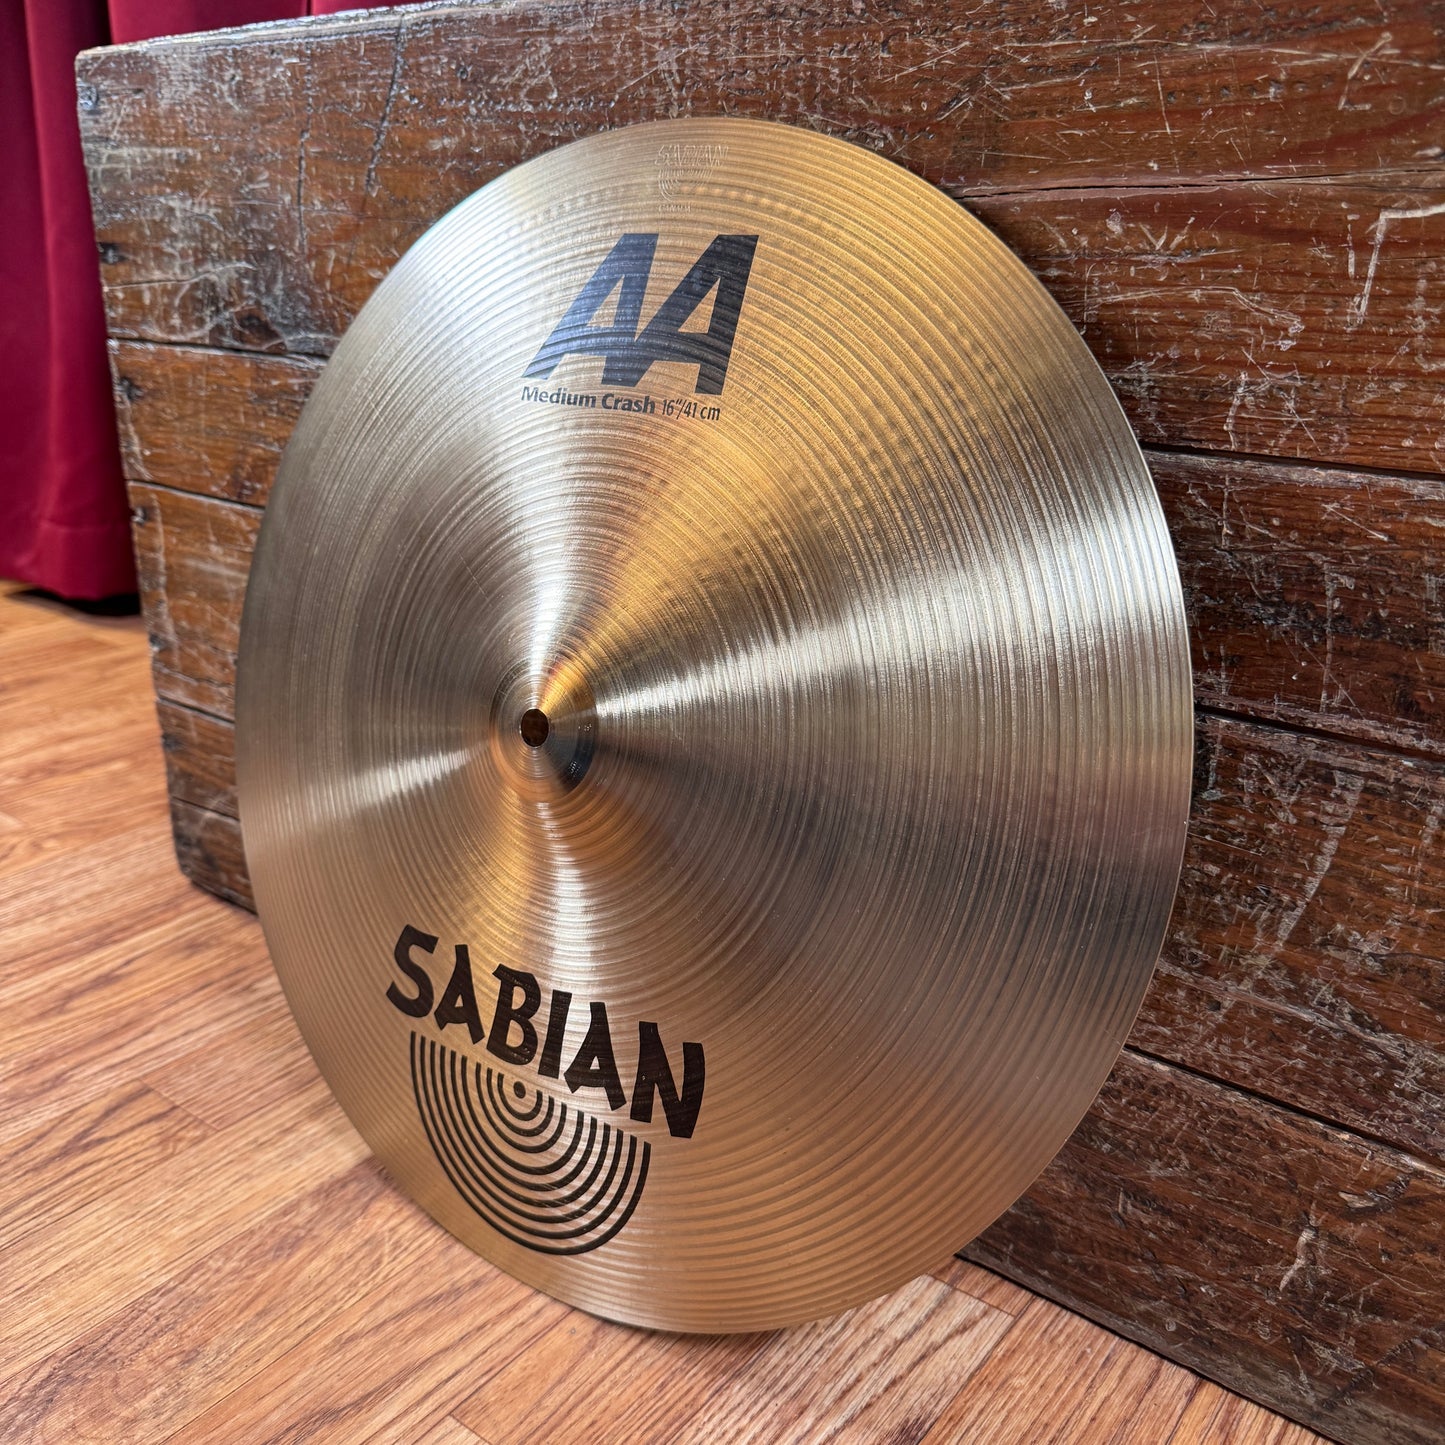 16" Sabian AA Medium Crash Cymbal 1246g *Video Demo*